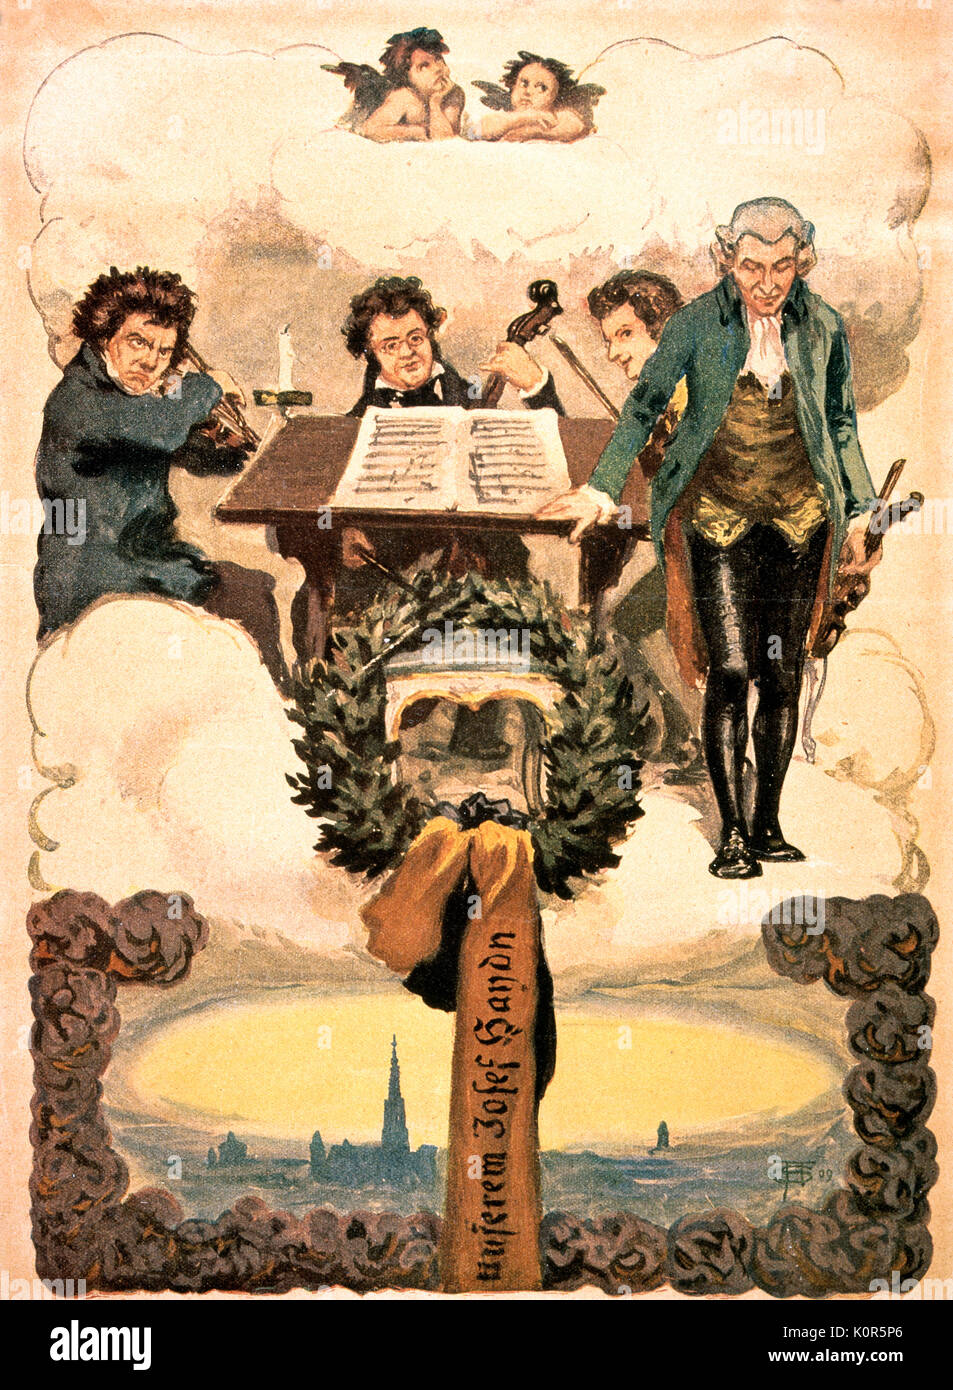 & Haydn Quatuor céleste. Compositeur autrichien, 31 mars 1732 - 31 mai 1809. 19e siècle quatuor de fantaisie dans le ciel avec de g.à d. Ludwig van Beethoven, Franz Schubert, Wolfgan Amadeus Mozart et Josef Haydn Banque D'Images